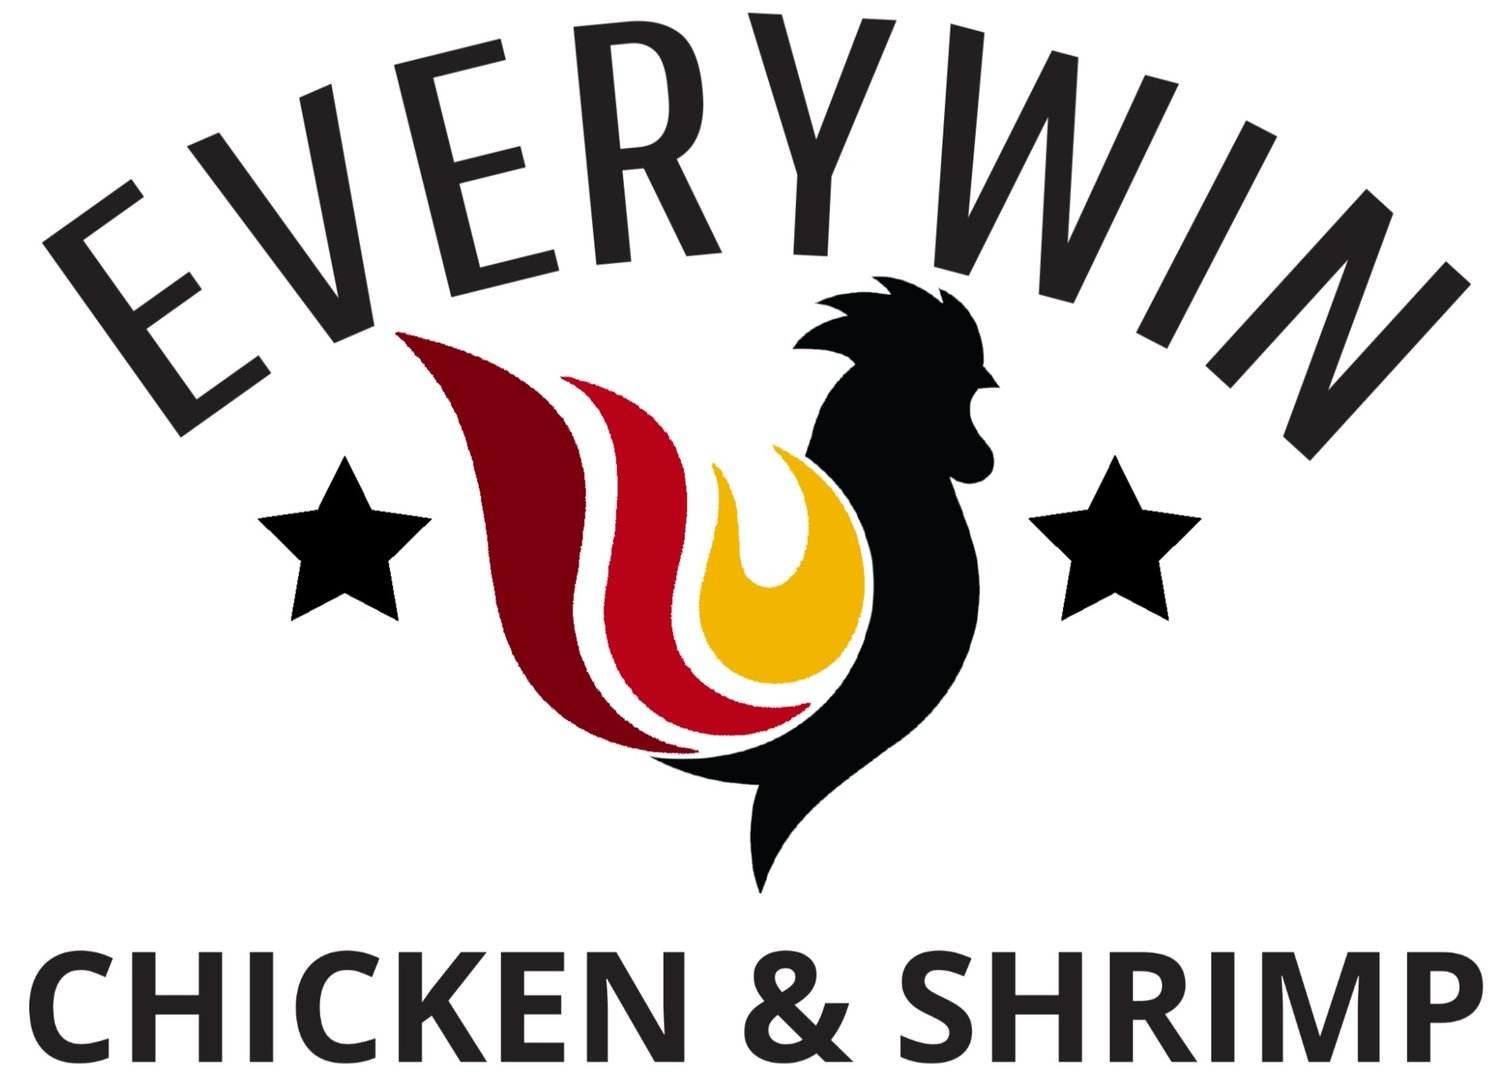 Everywin Hot Chicken